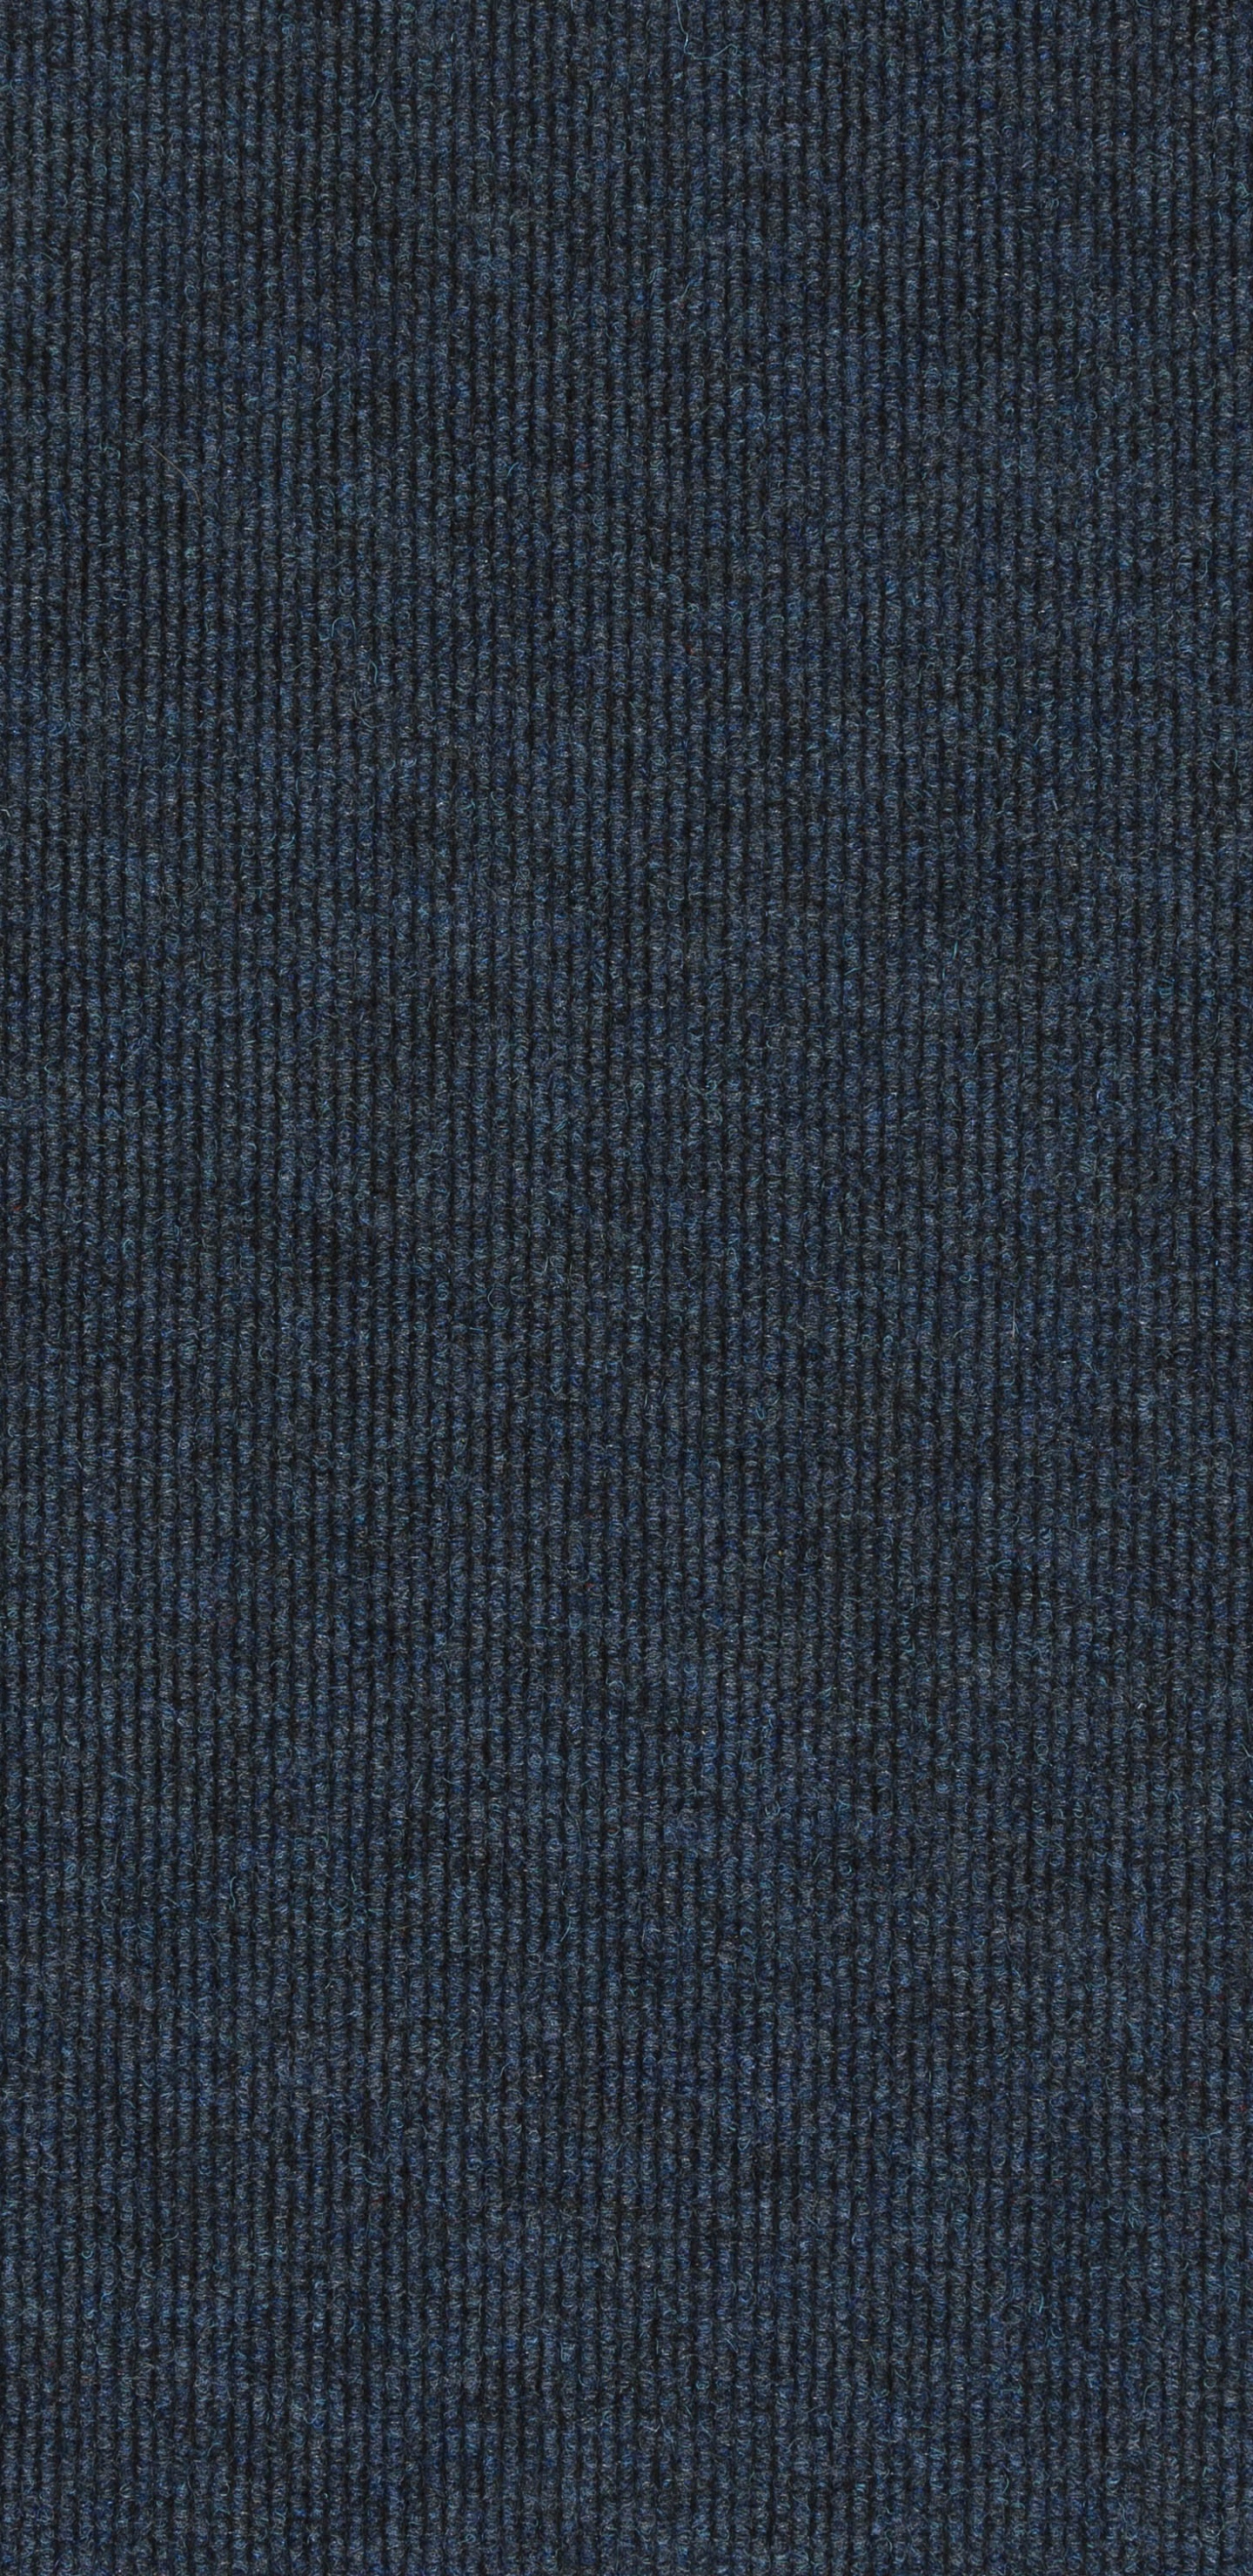 Textil Azul Con Fondo Negro. Wallpaper in 1440x2960 Resolution